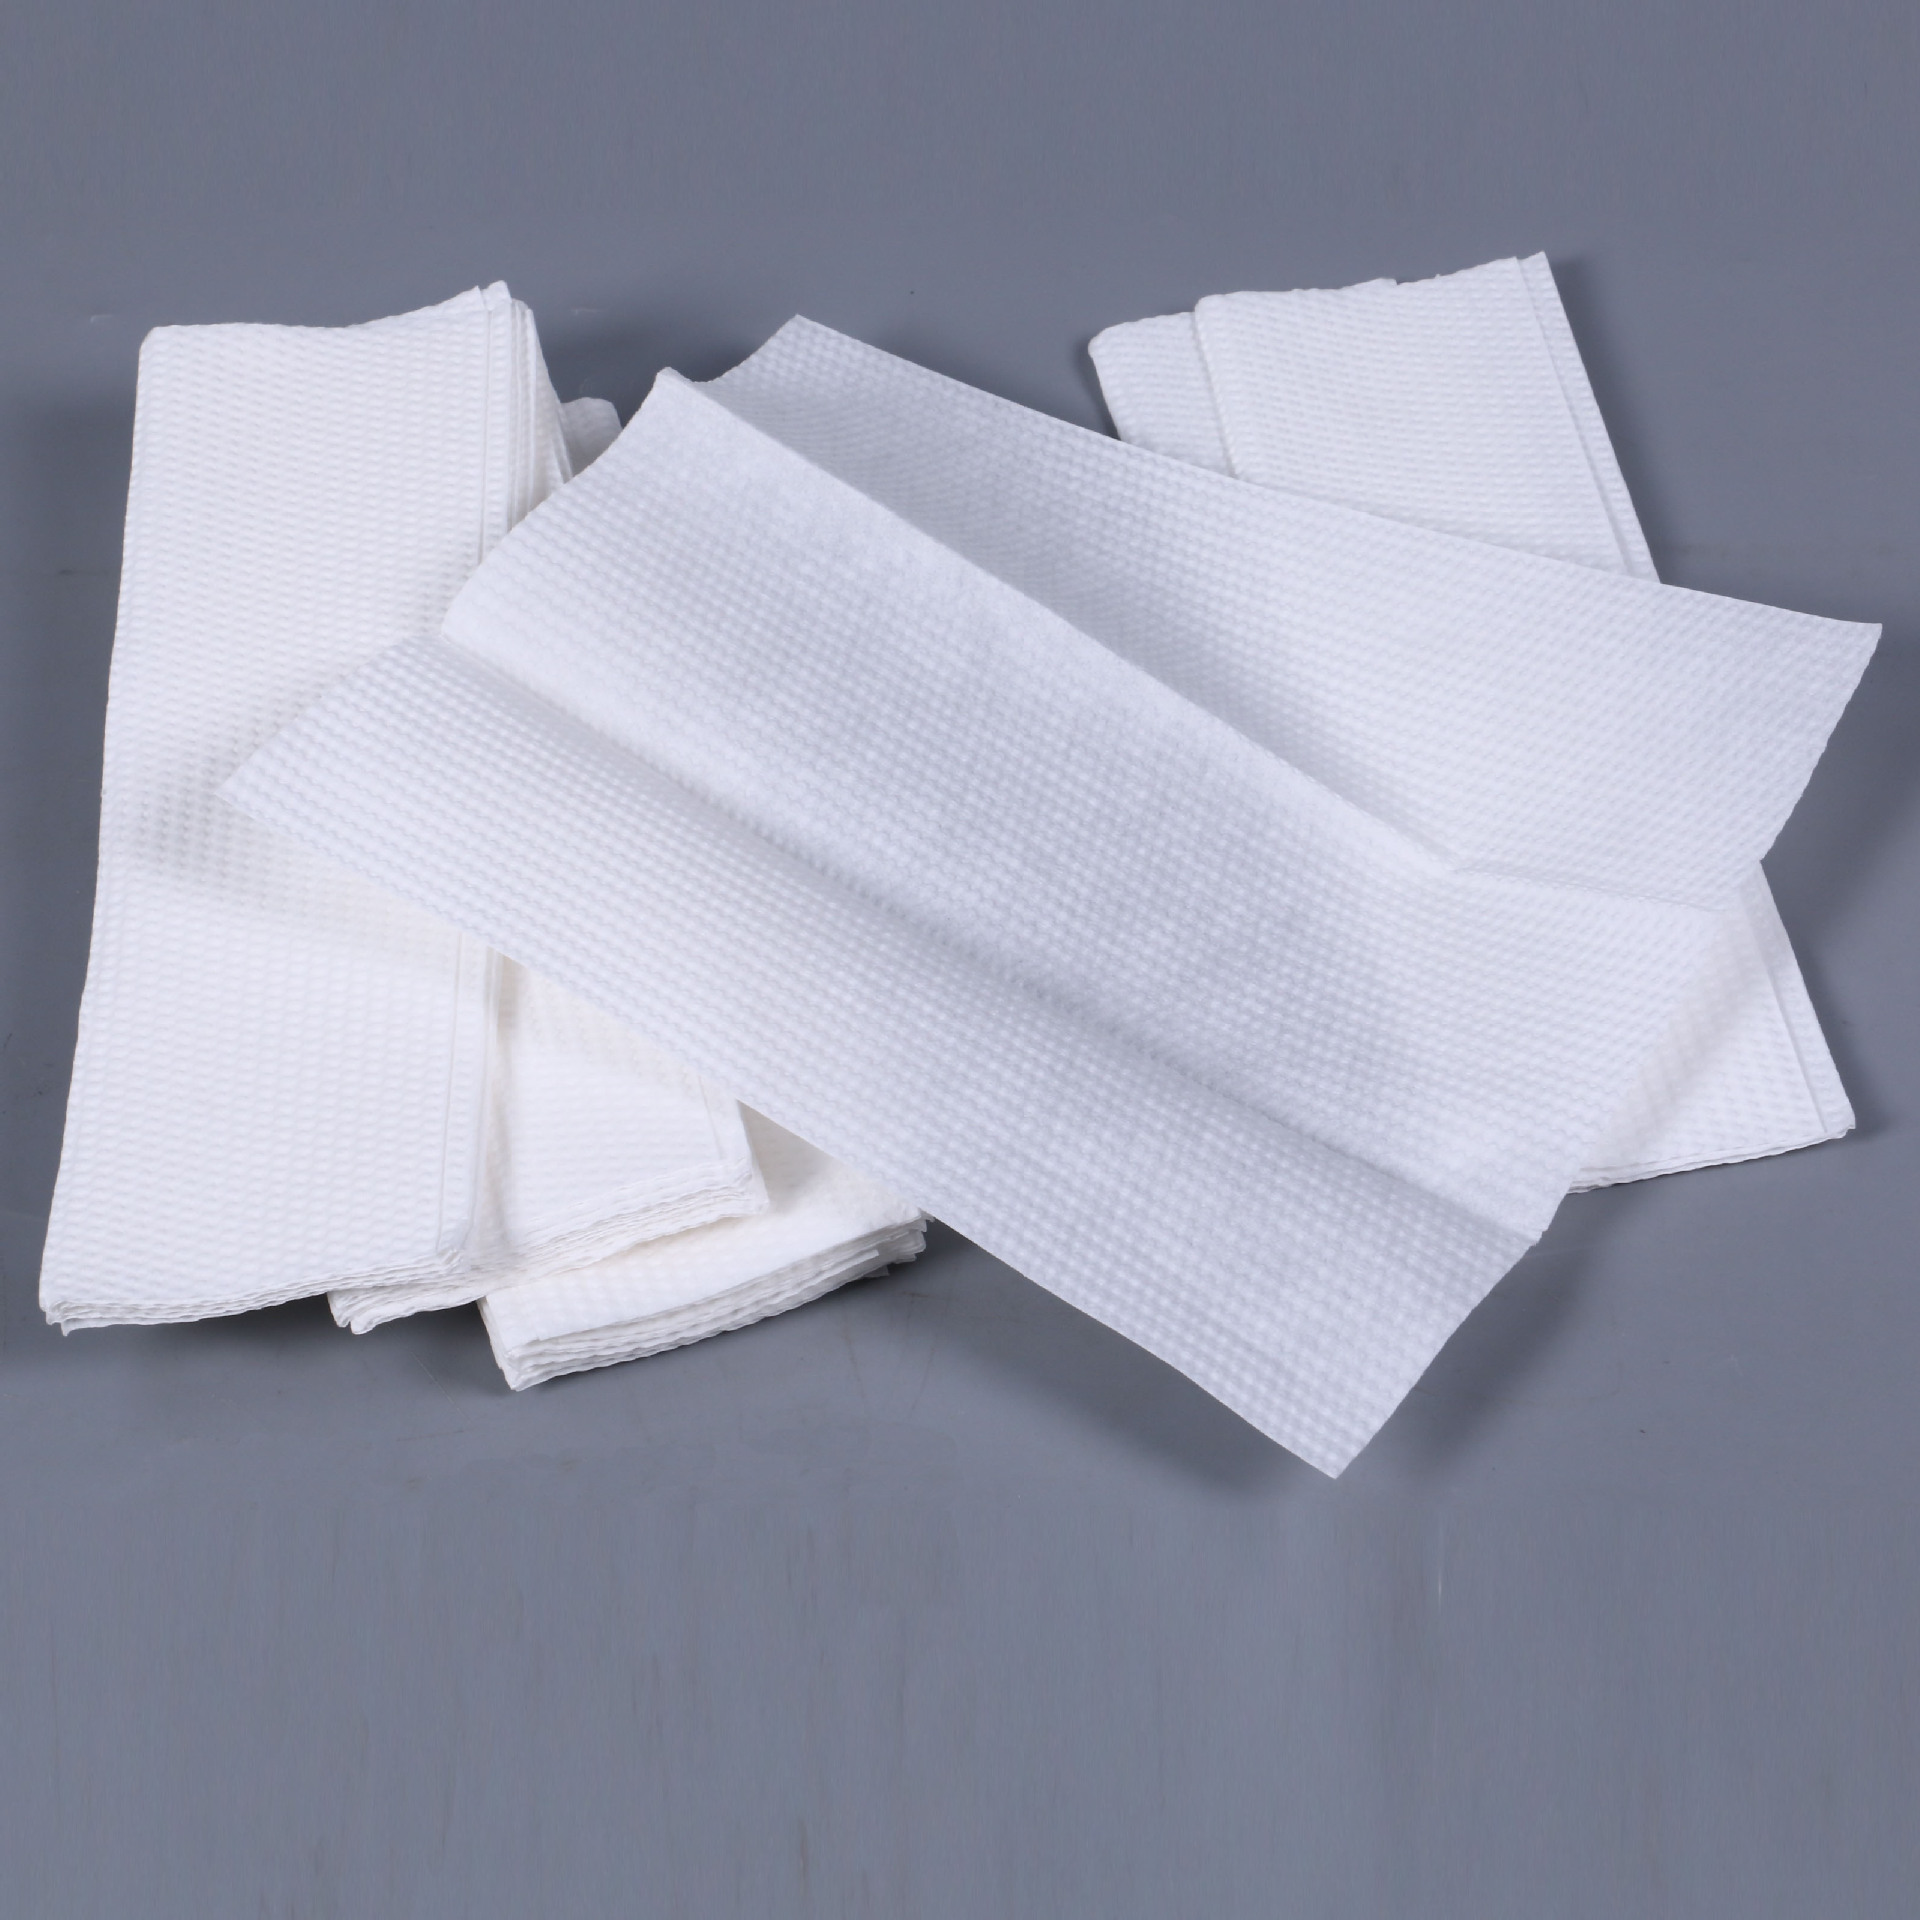 批发加厚三折擦手纸130抽厨房吸油用纸抽纸酒店厕所卫生纸 包邮